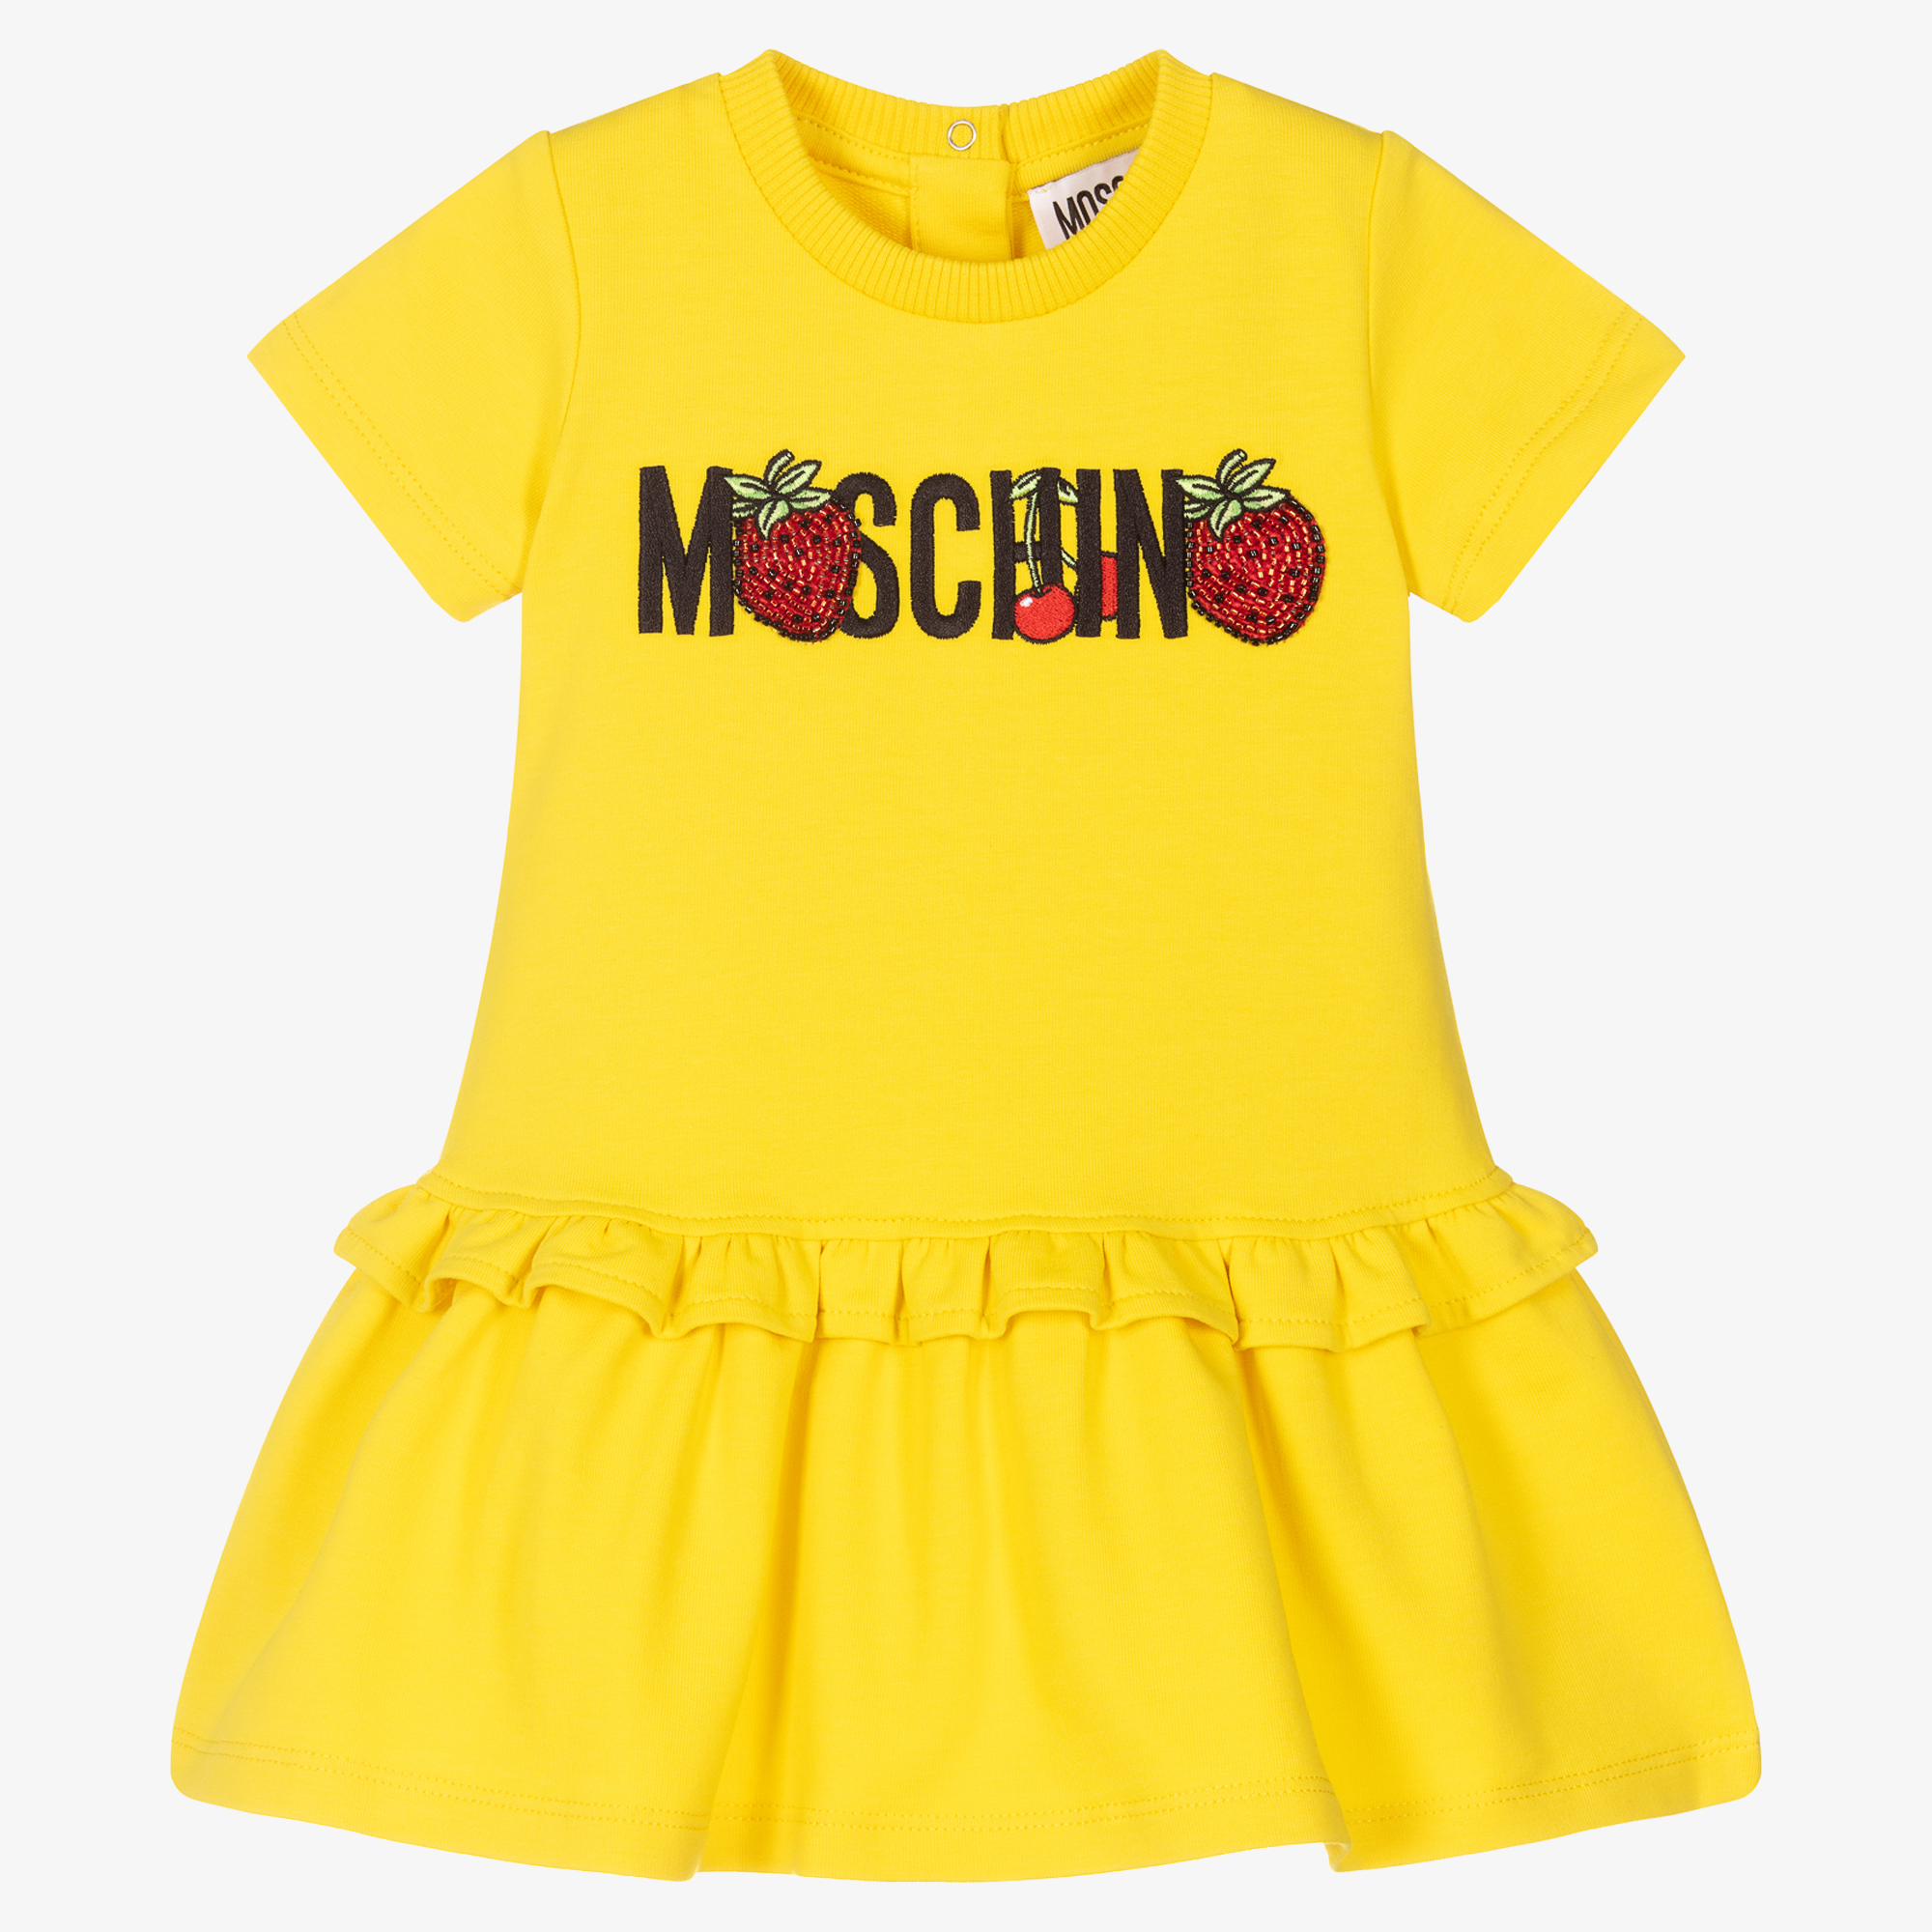 Baby and yellow. Желтое платье для подростка. Детское платье Москино. Мальчик в желтом платье. Мосчино желтый.